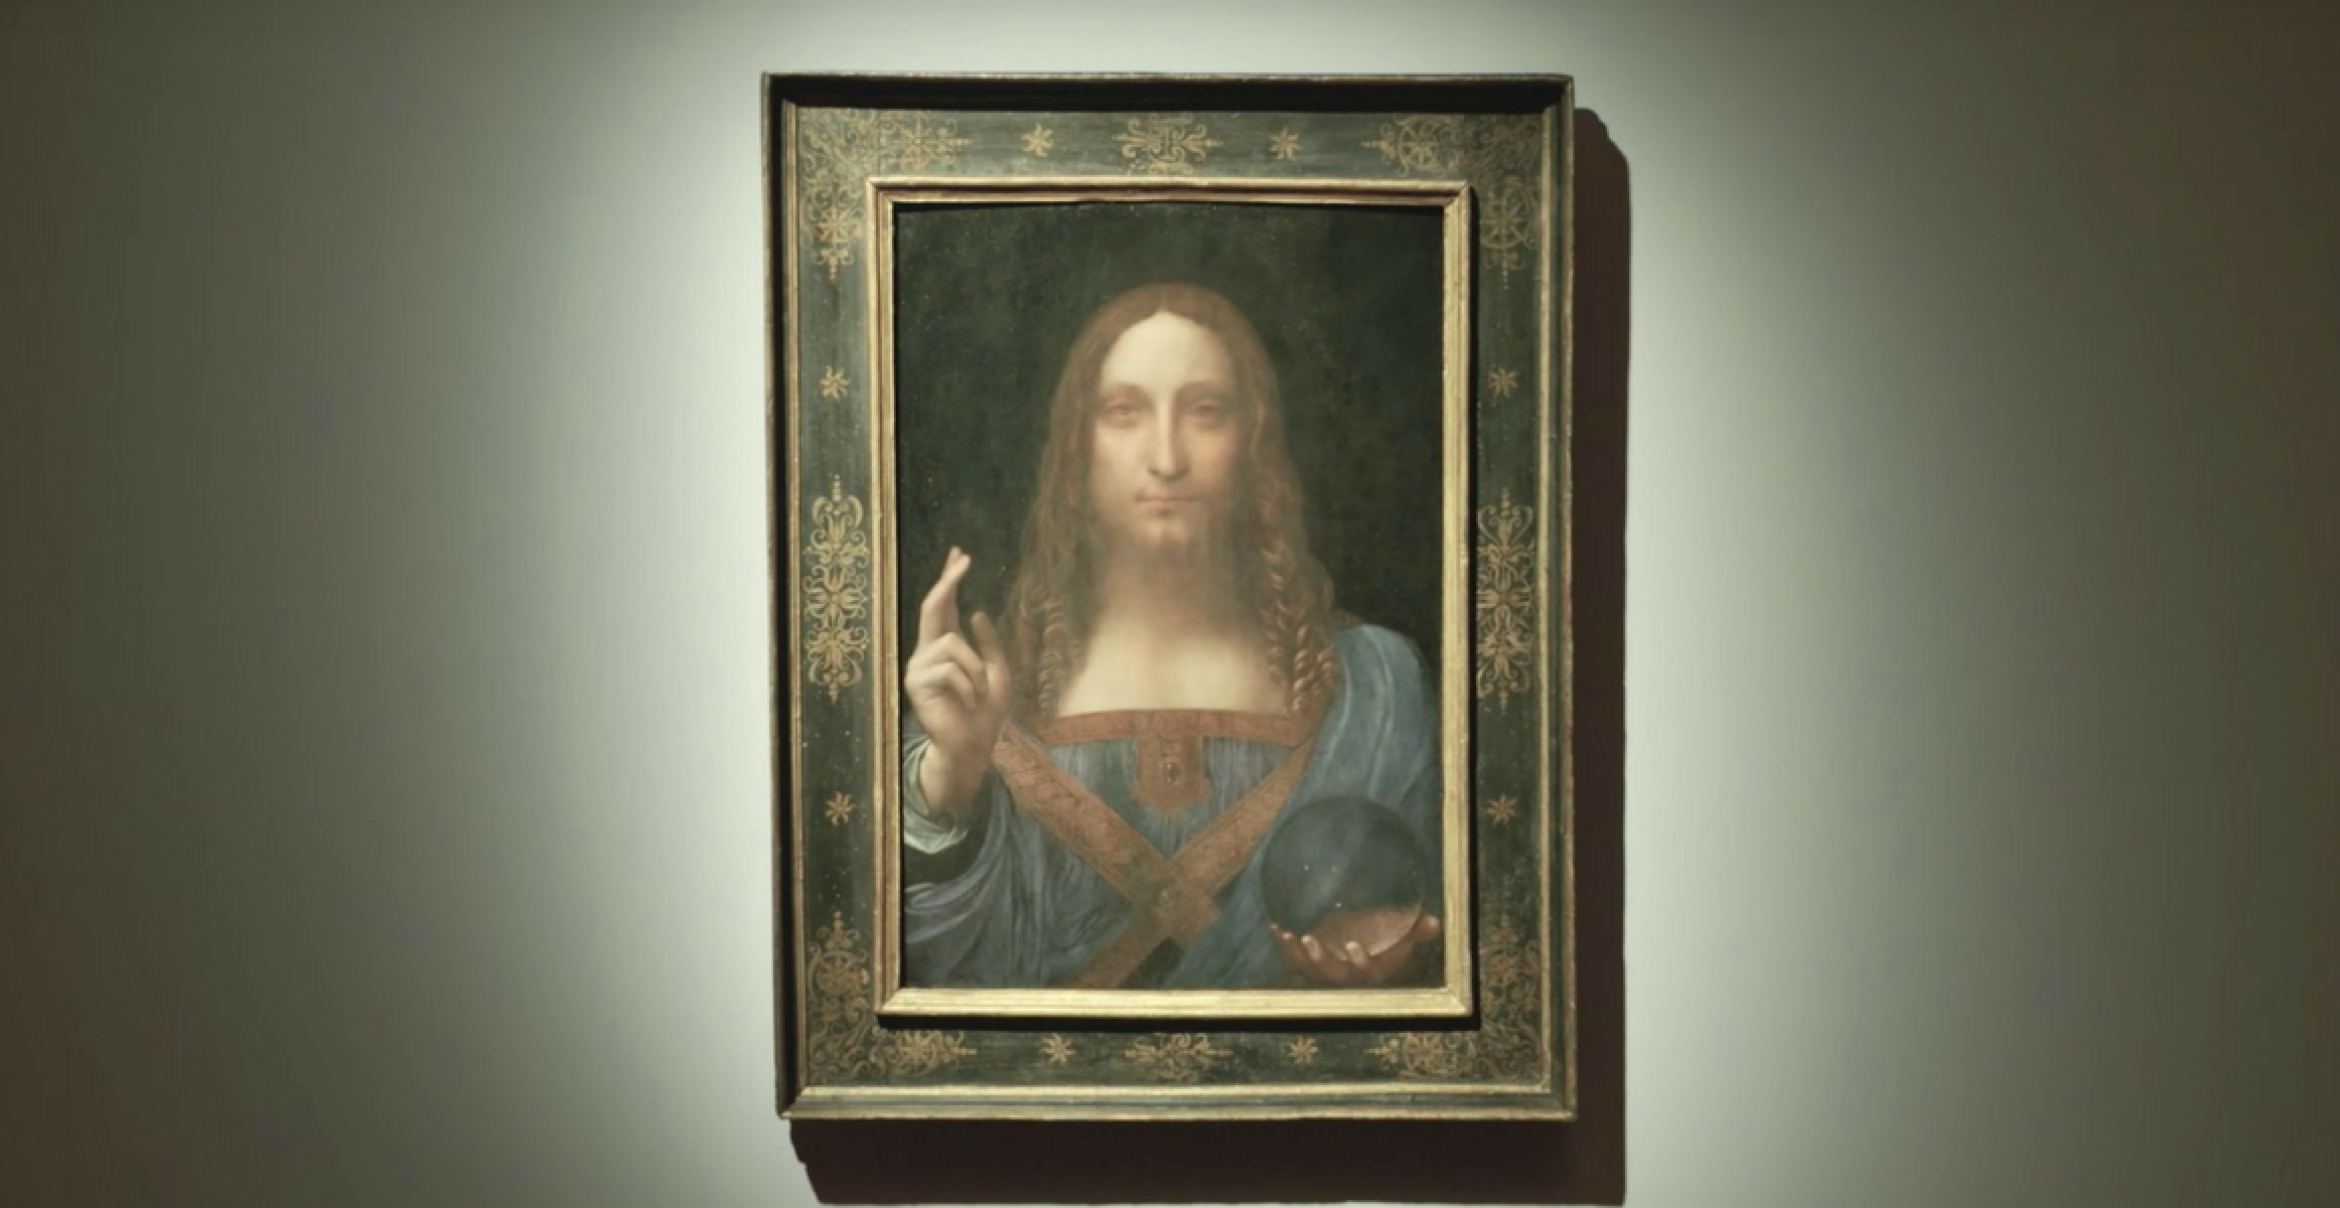 Rekord: Mutmaßliches da-Vinci-Gemälde ist jetzt teuerstes Kunstwerk der Welt